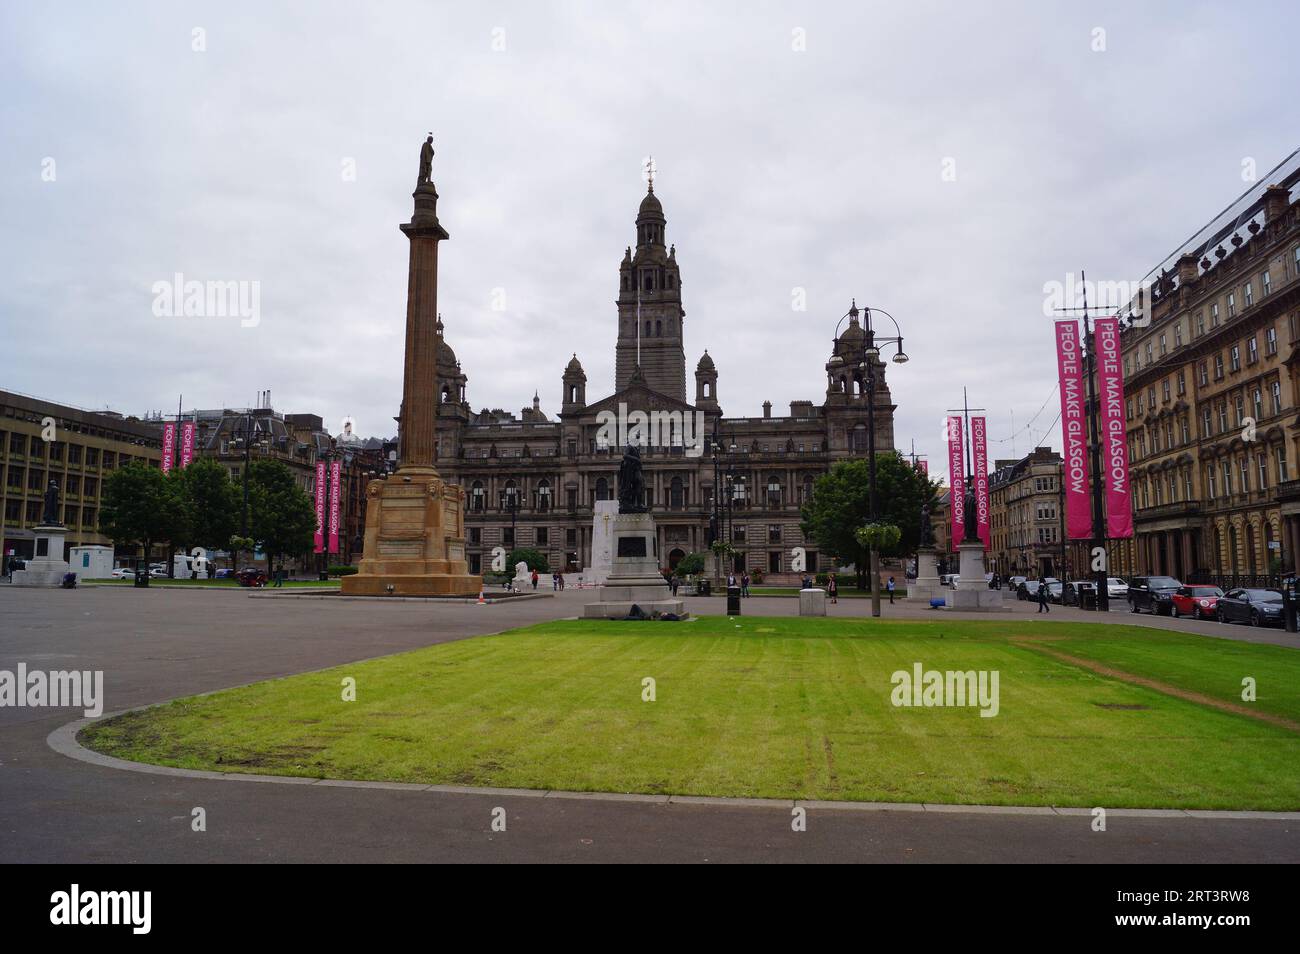 Glasgow, Écosse (Royaume-Uni) : vue de George Square avec les City Chambers, la colonne Sir Walter Scott et la statue de Robert Burns Banque D'Images